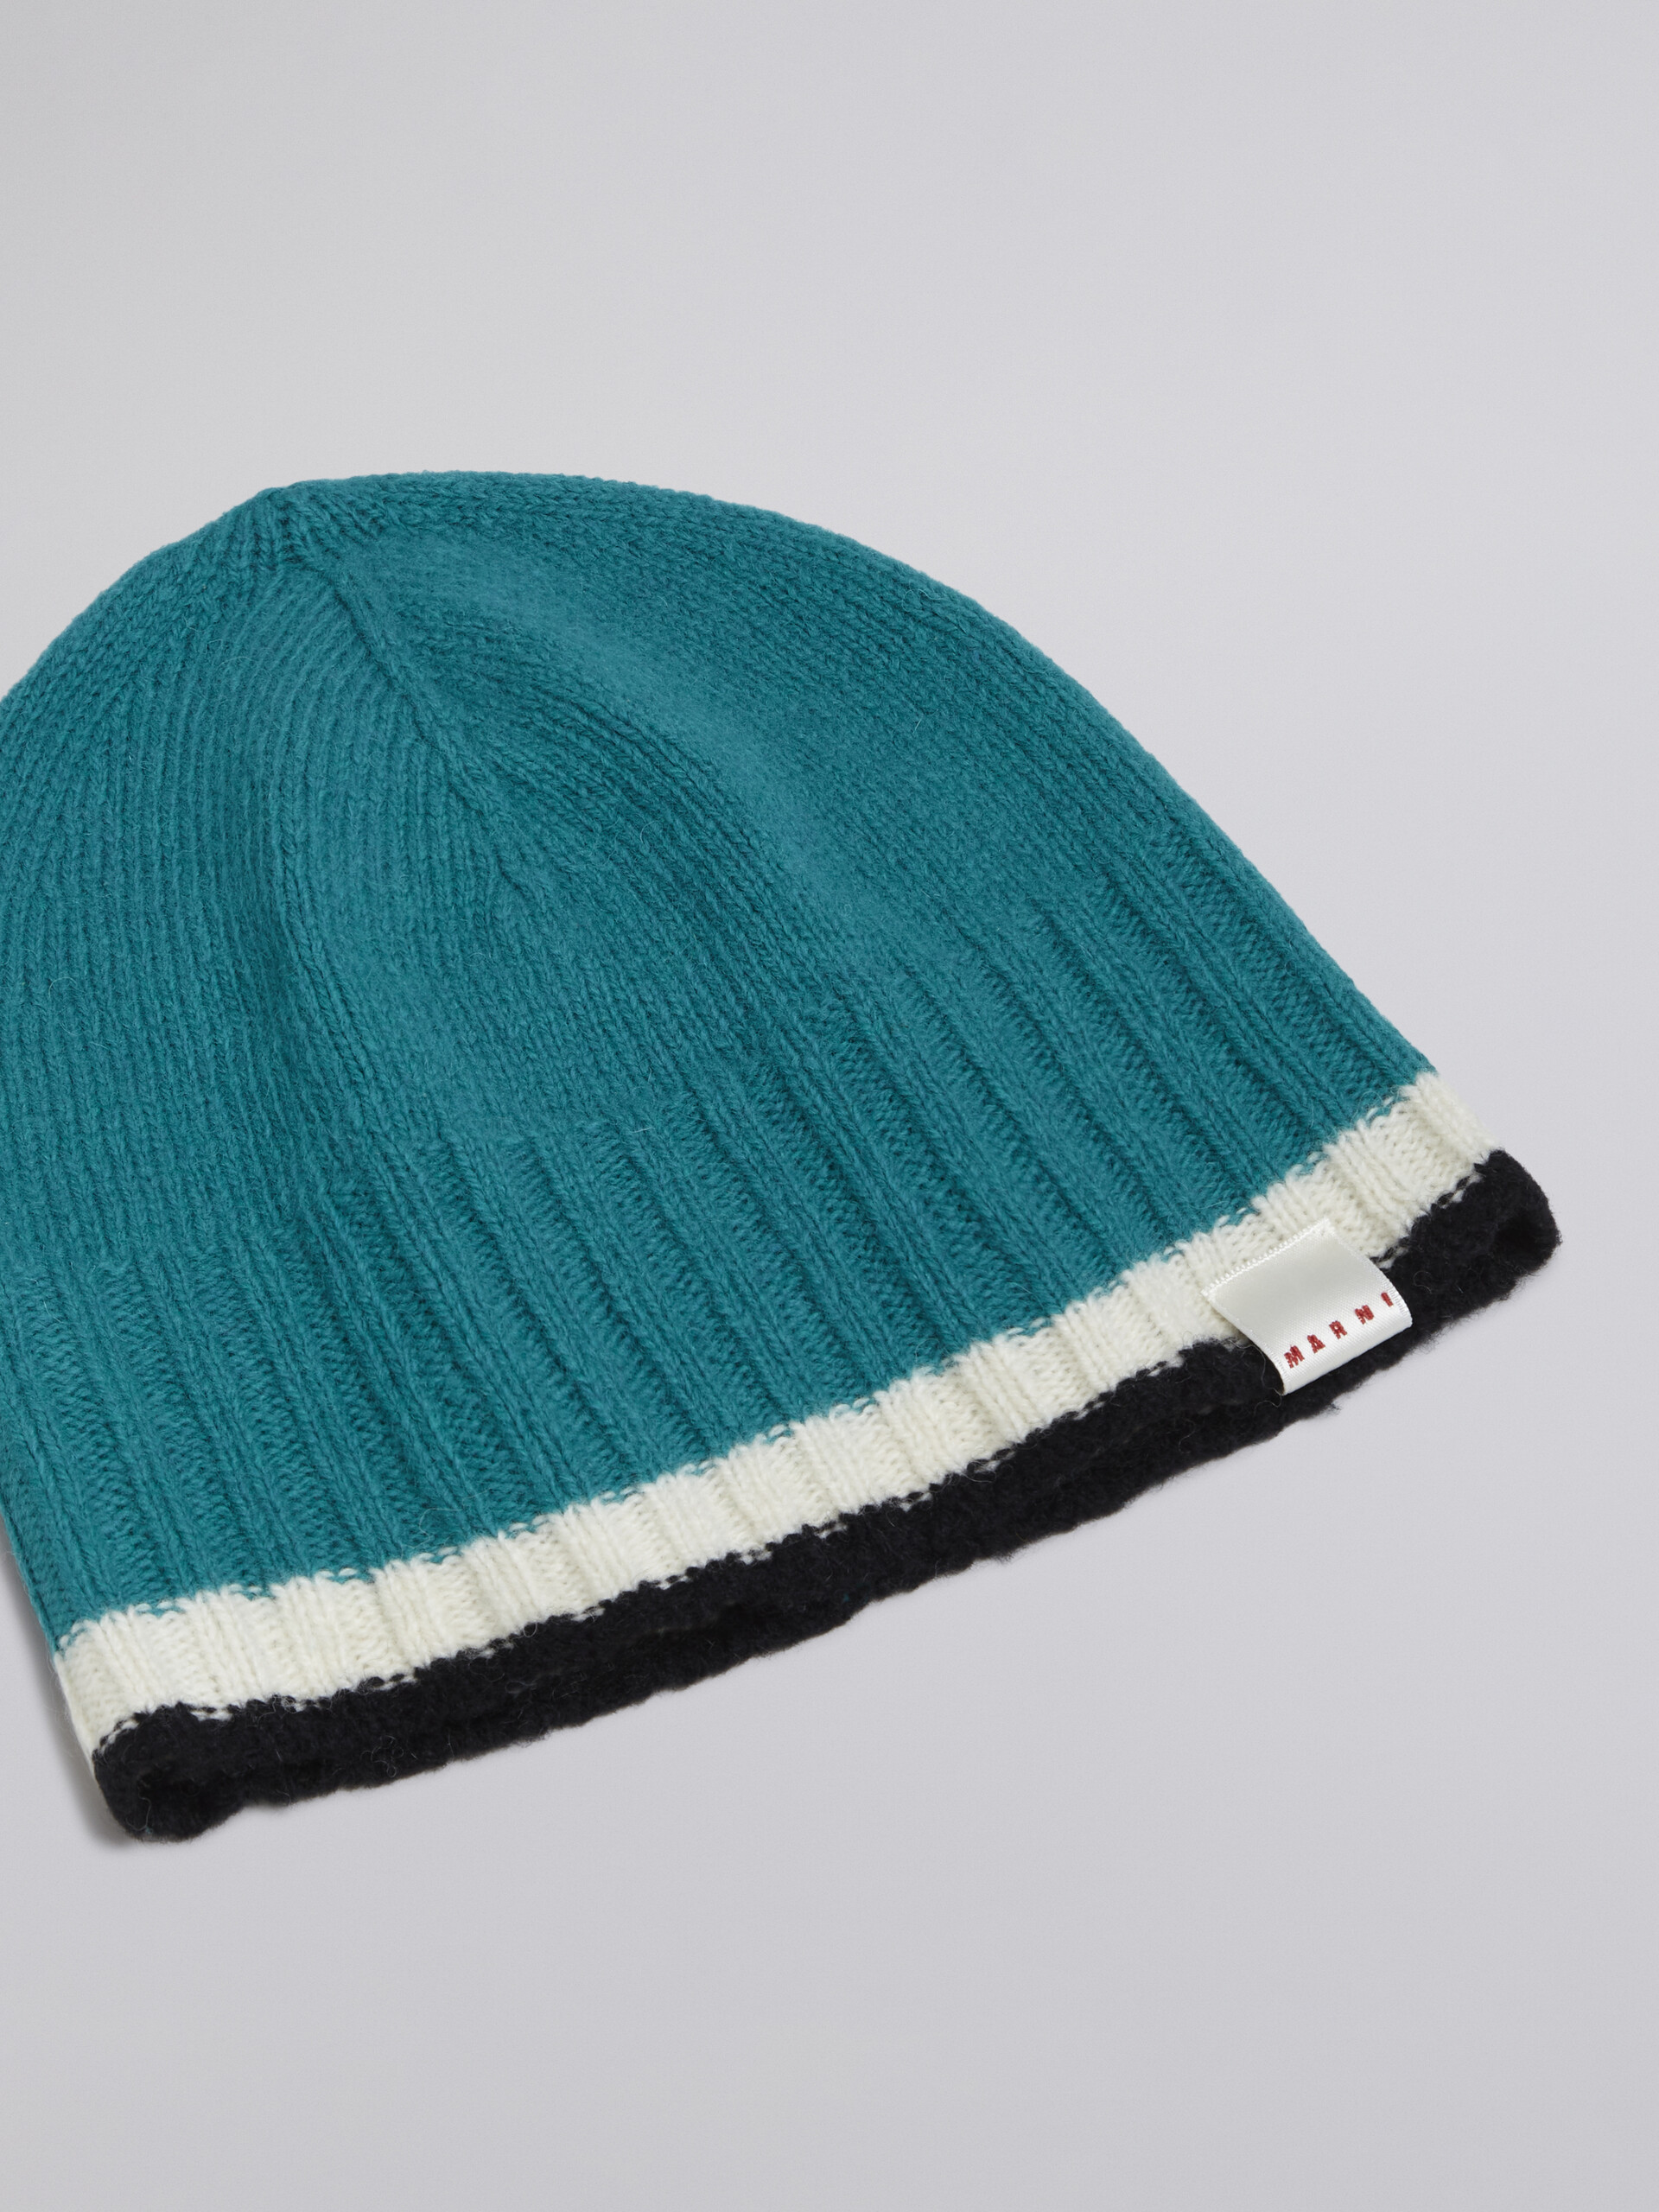 Berretto in lana vergine a blocchi di colore azzurro - Cappelli - Image 3